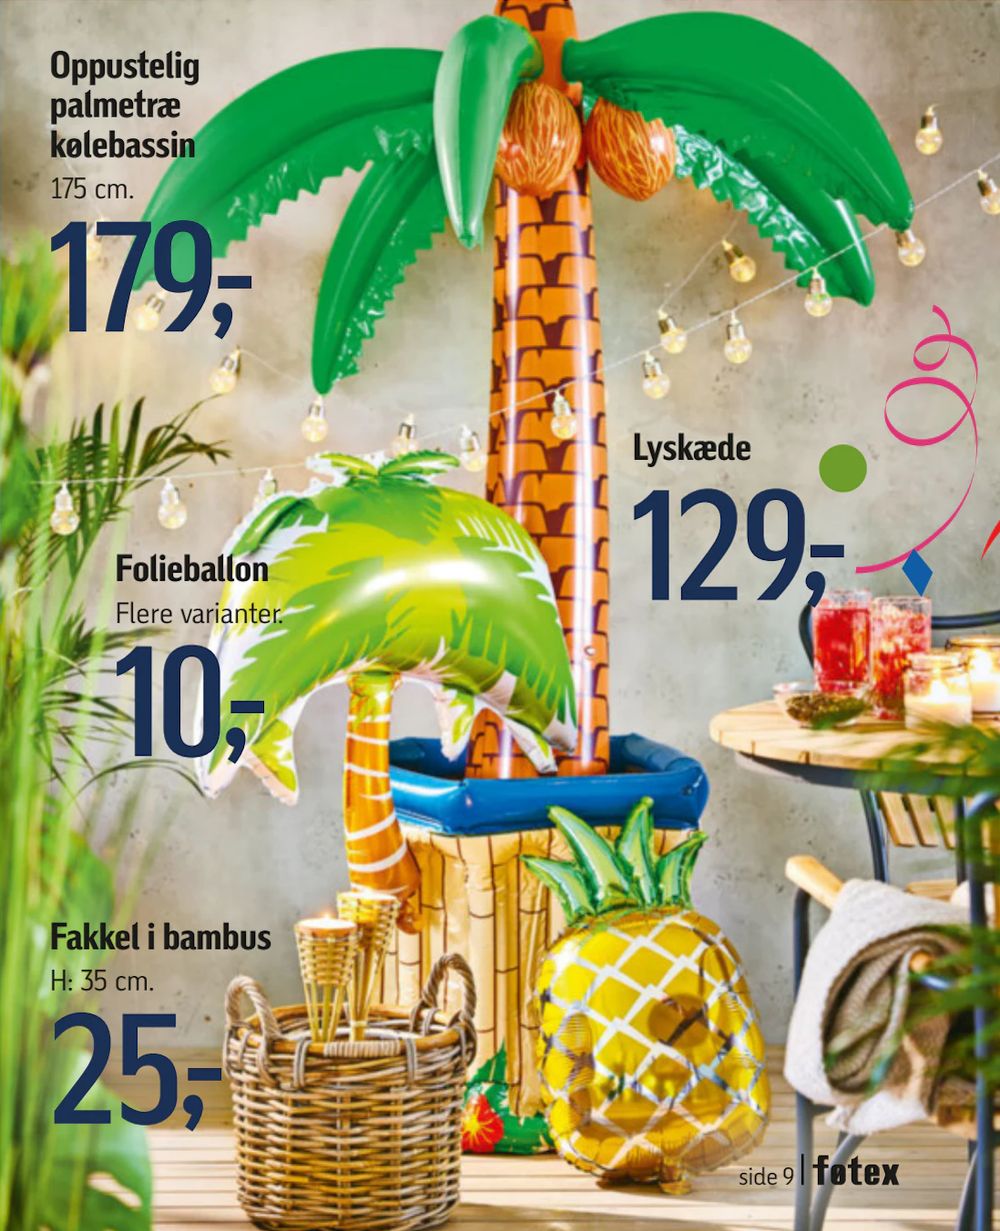 Tilbud på Oppustelig palmetræ kølebassin fra føtex til 179 kr.